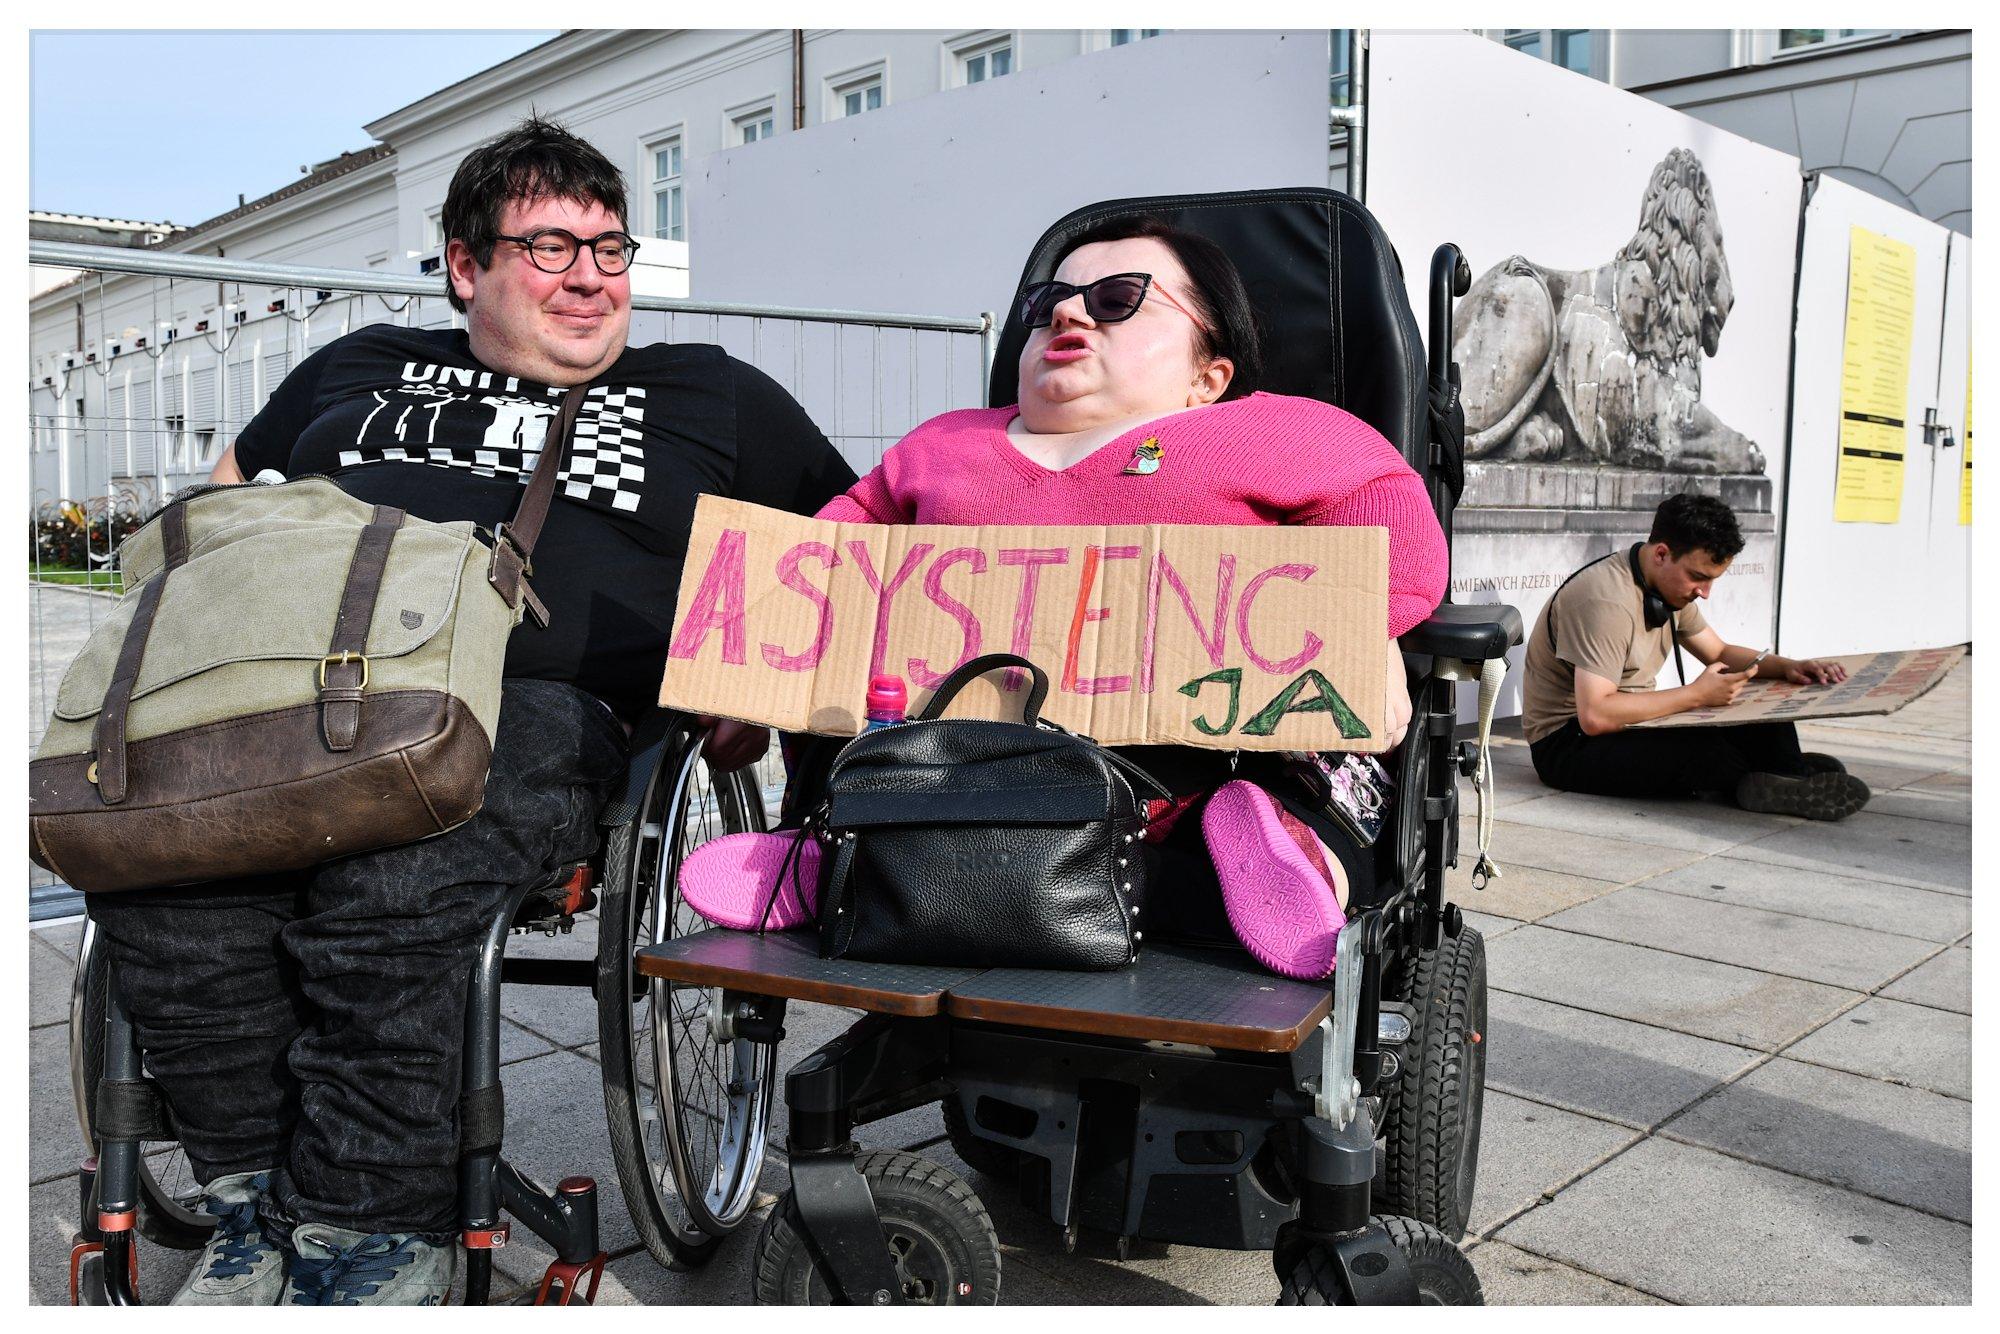 Dwie osoby z niepełnosprawnością na wózkach przed pałacem prezydenckim. Jedna trzyma transparent z napisem "asystenc-ja"